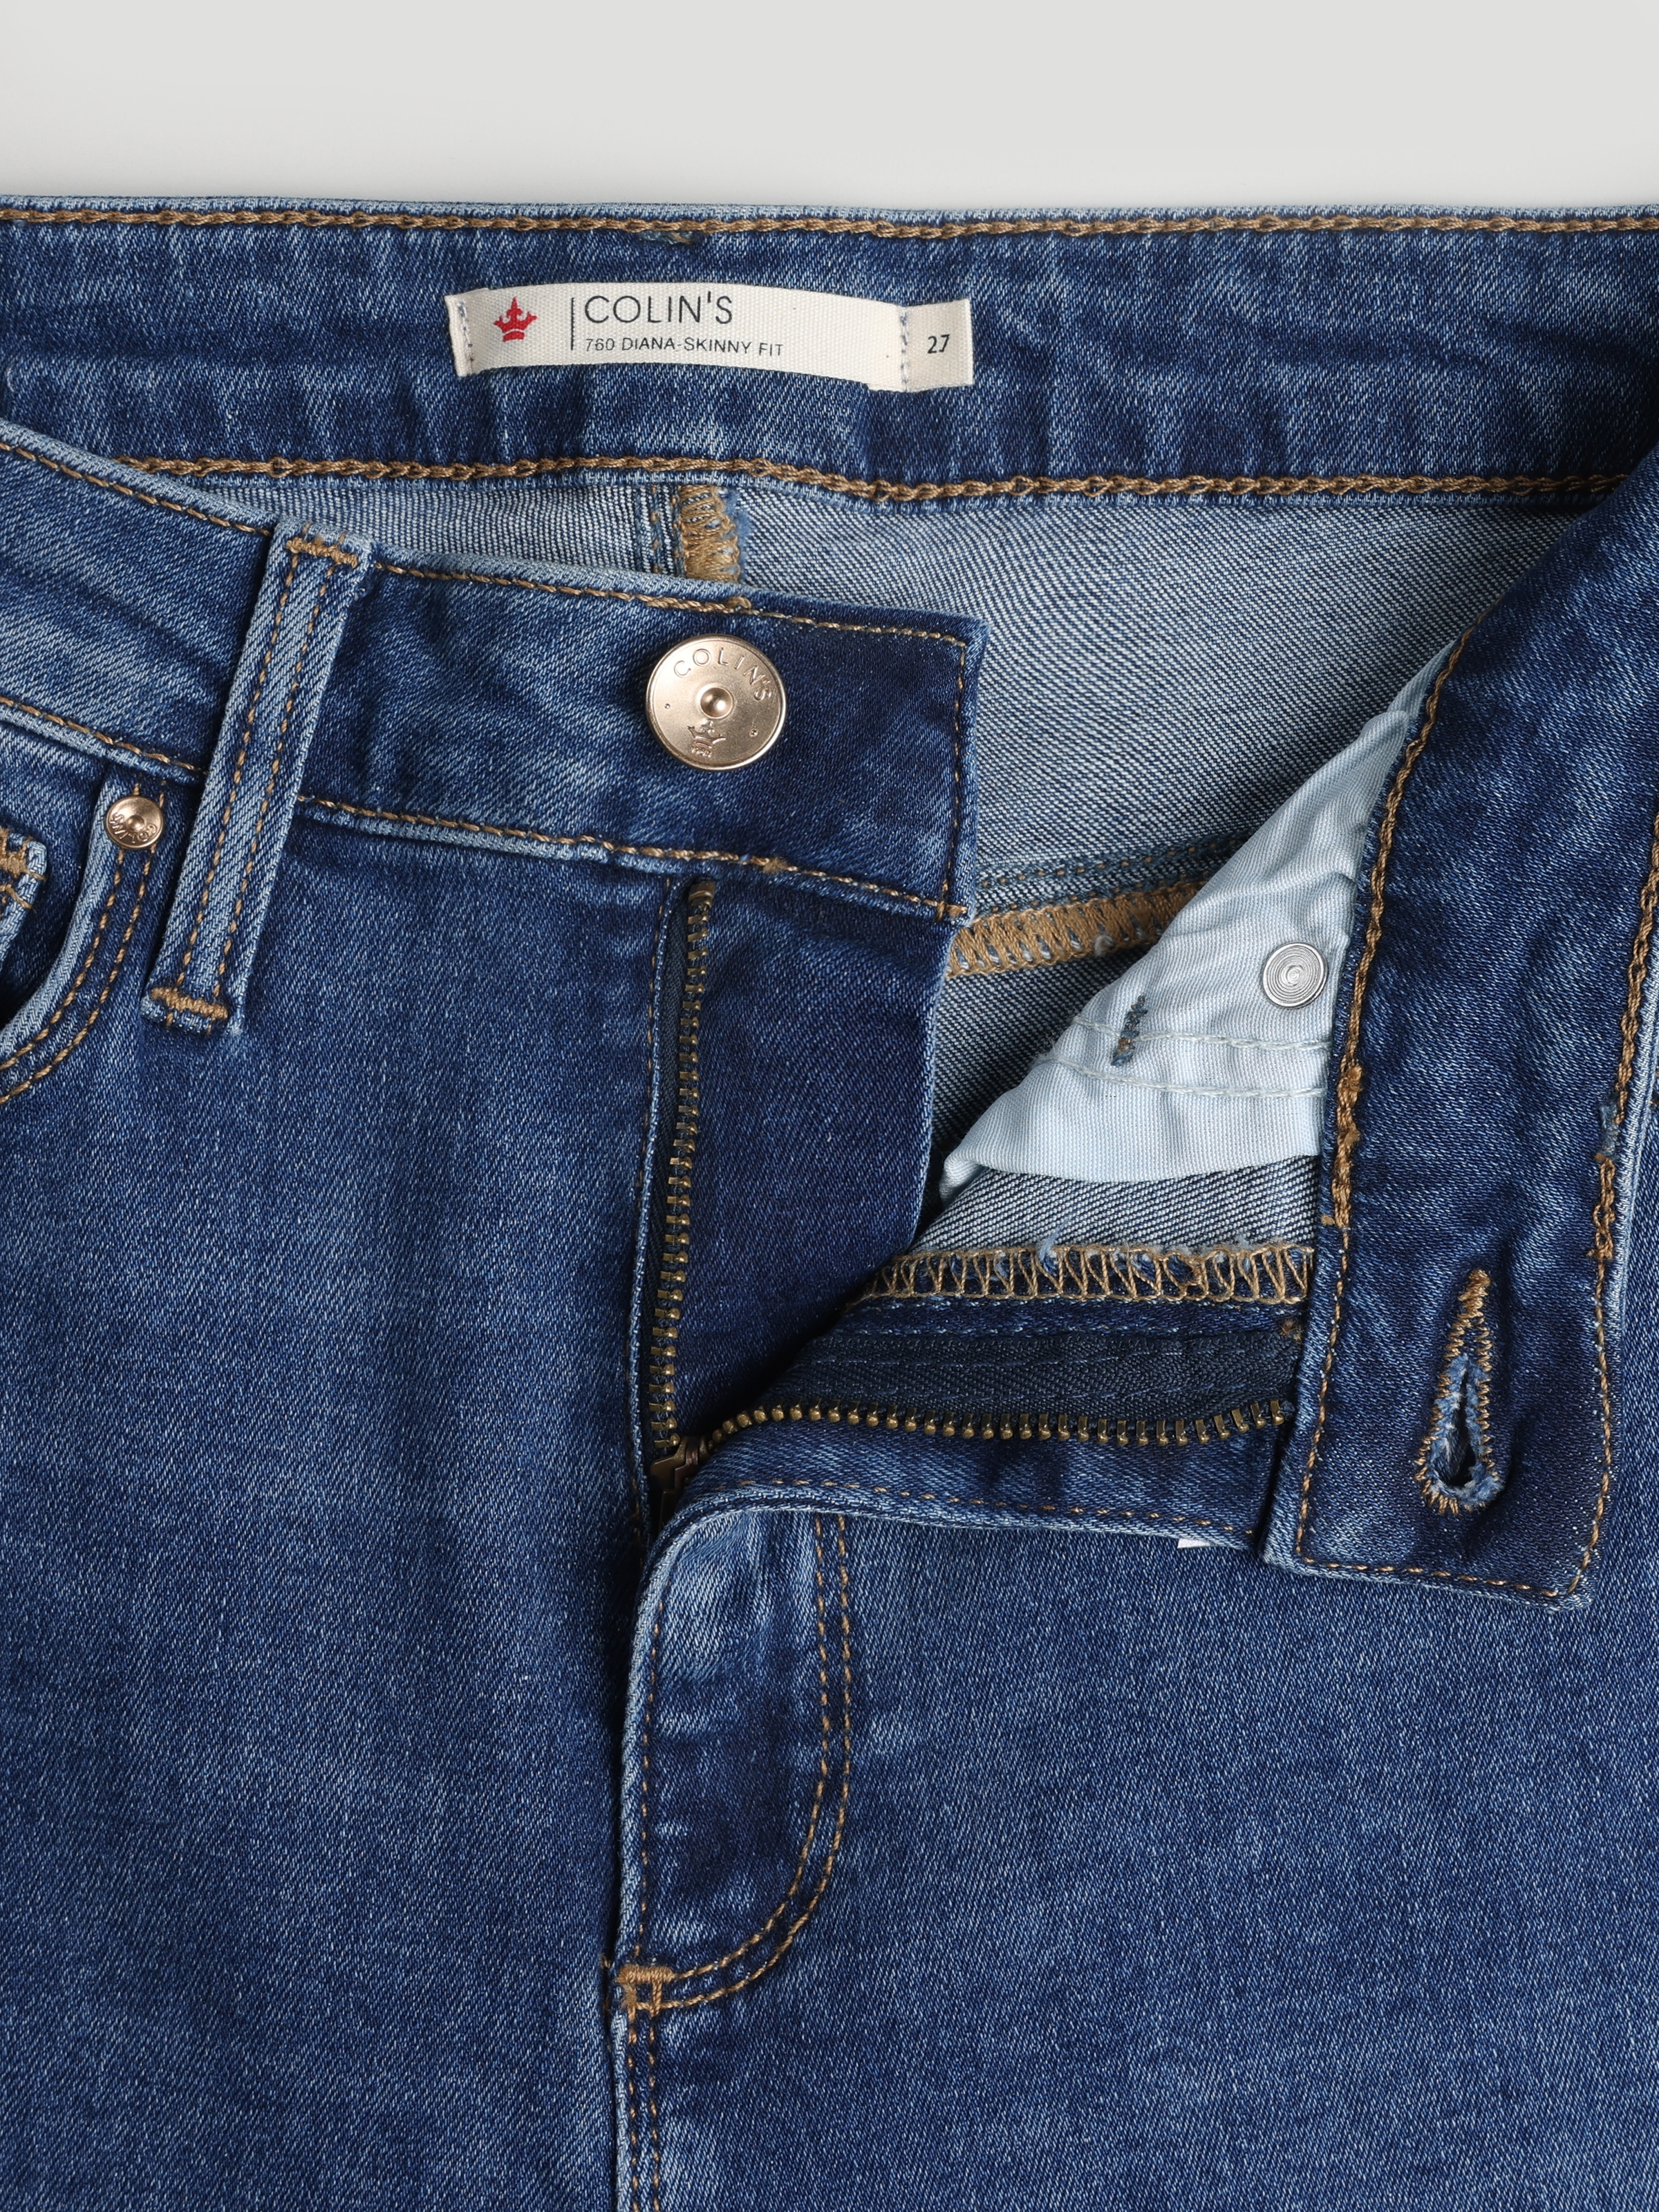 Afișați detalii pentru Pantaloni De Dama Albastru Skinny Fit 760 DIANA